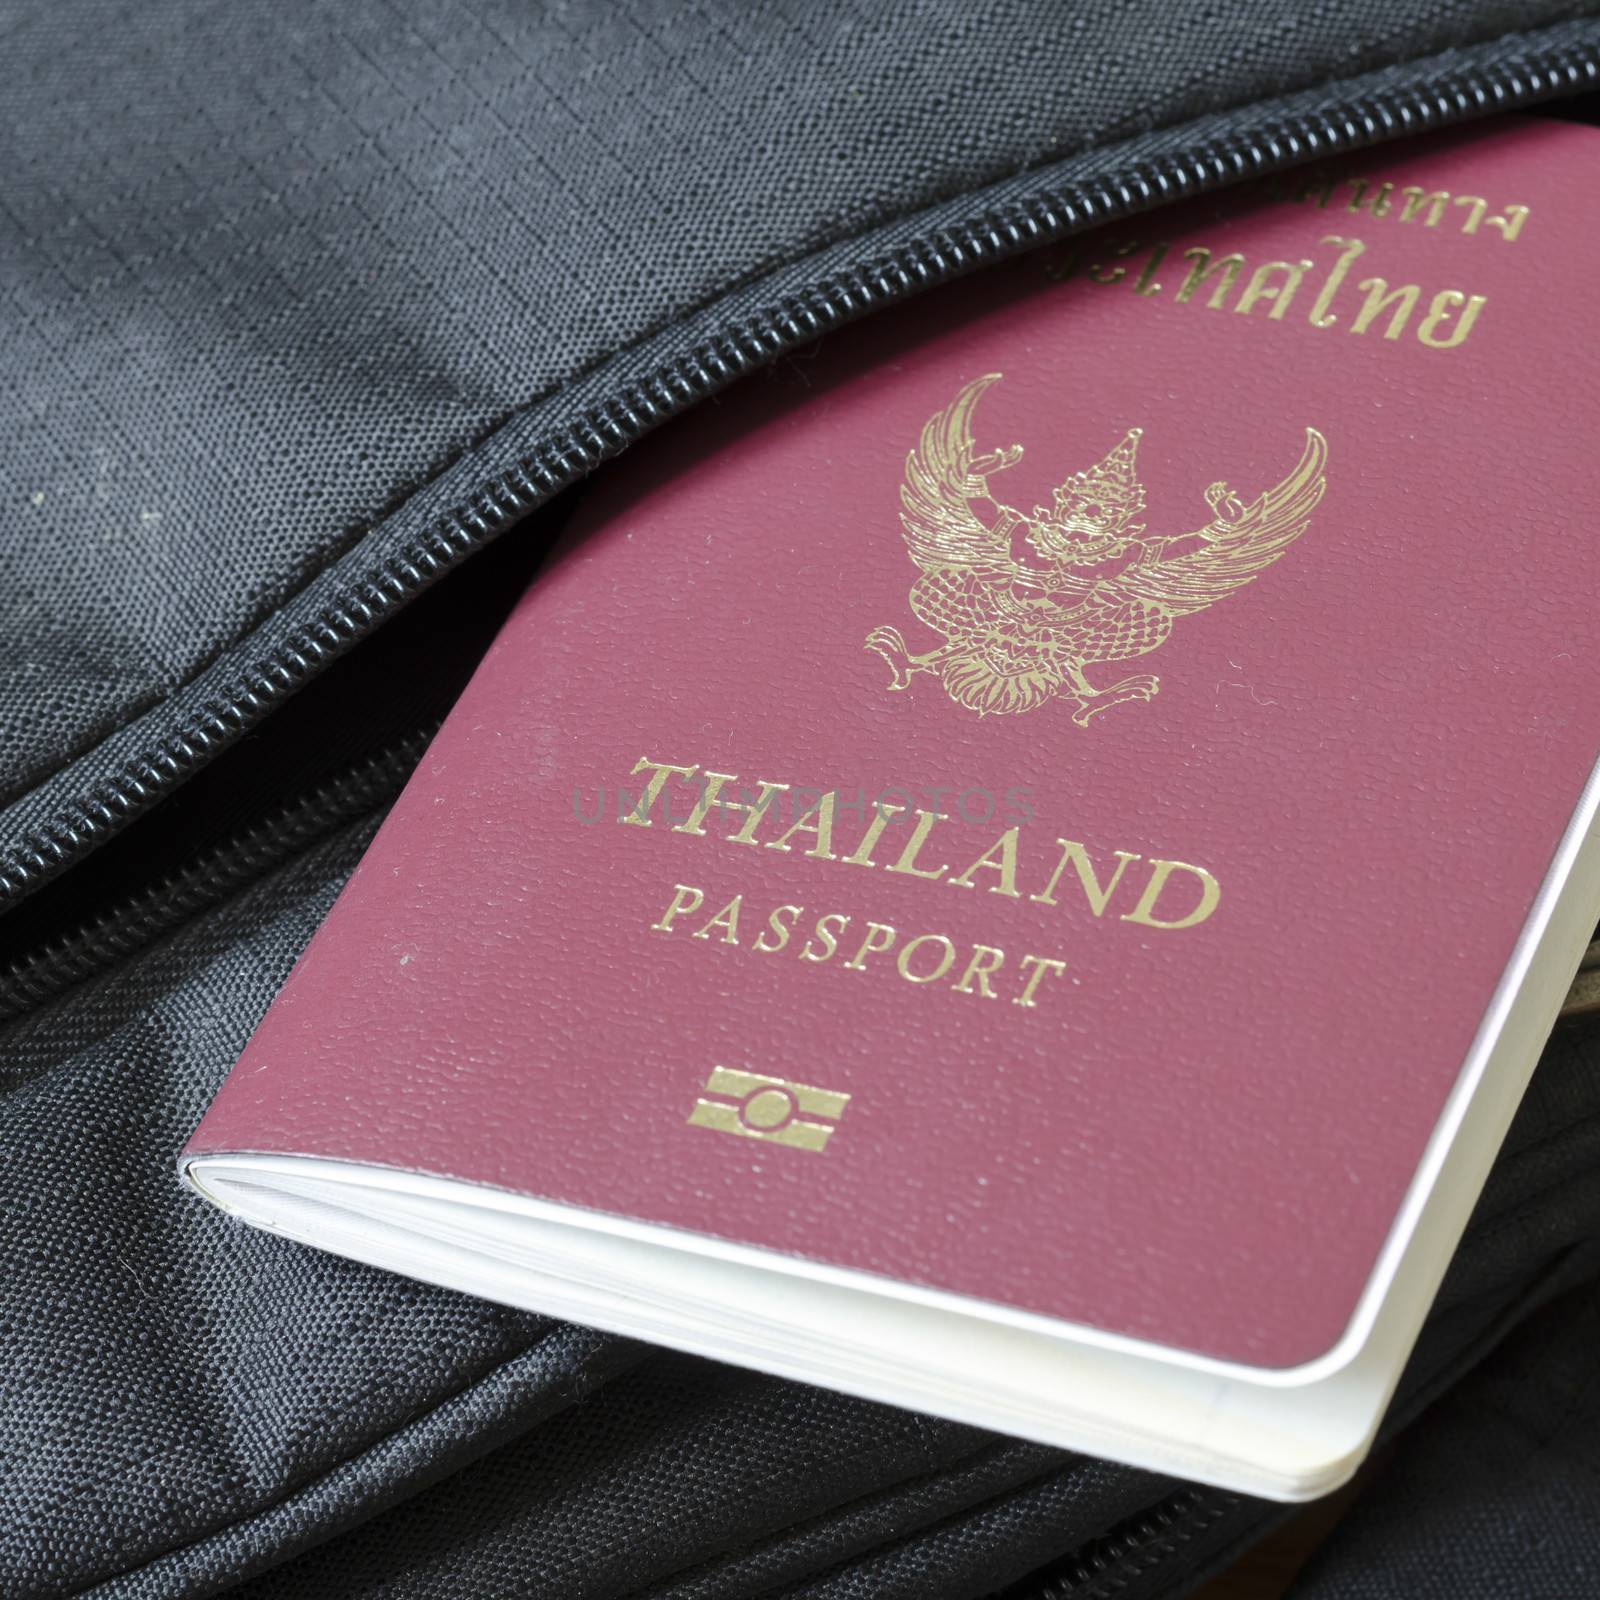 Thai passport by ammza12